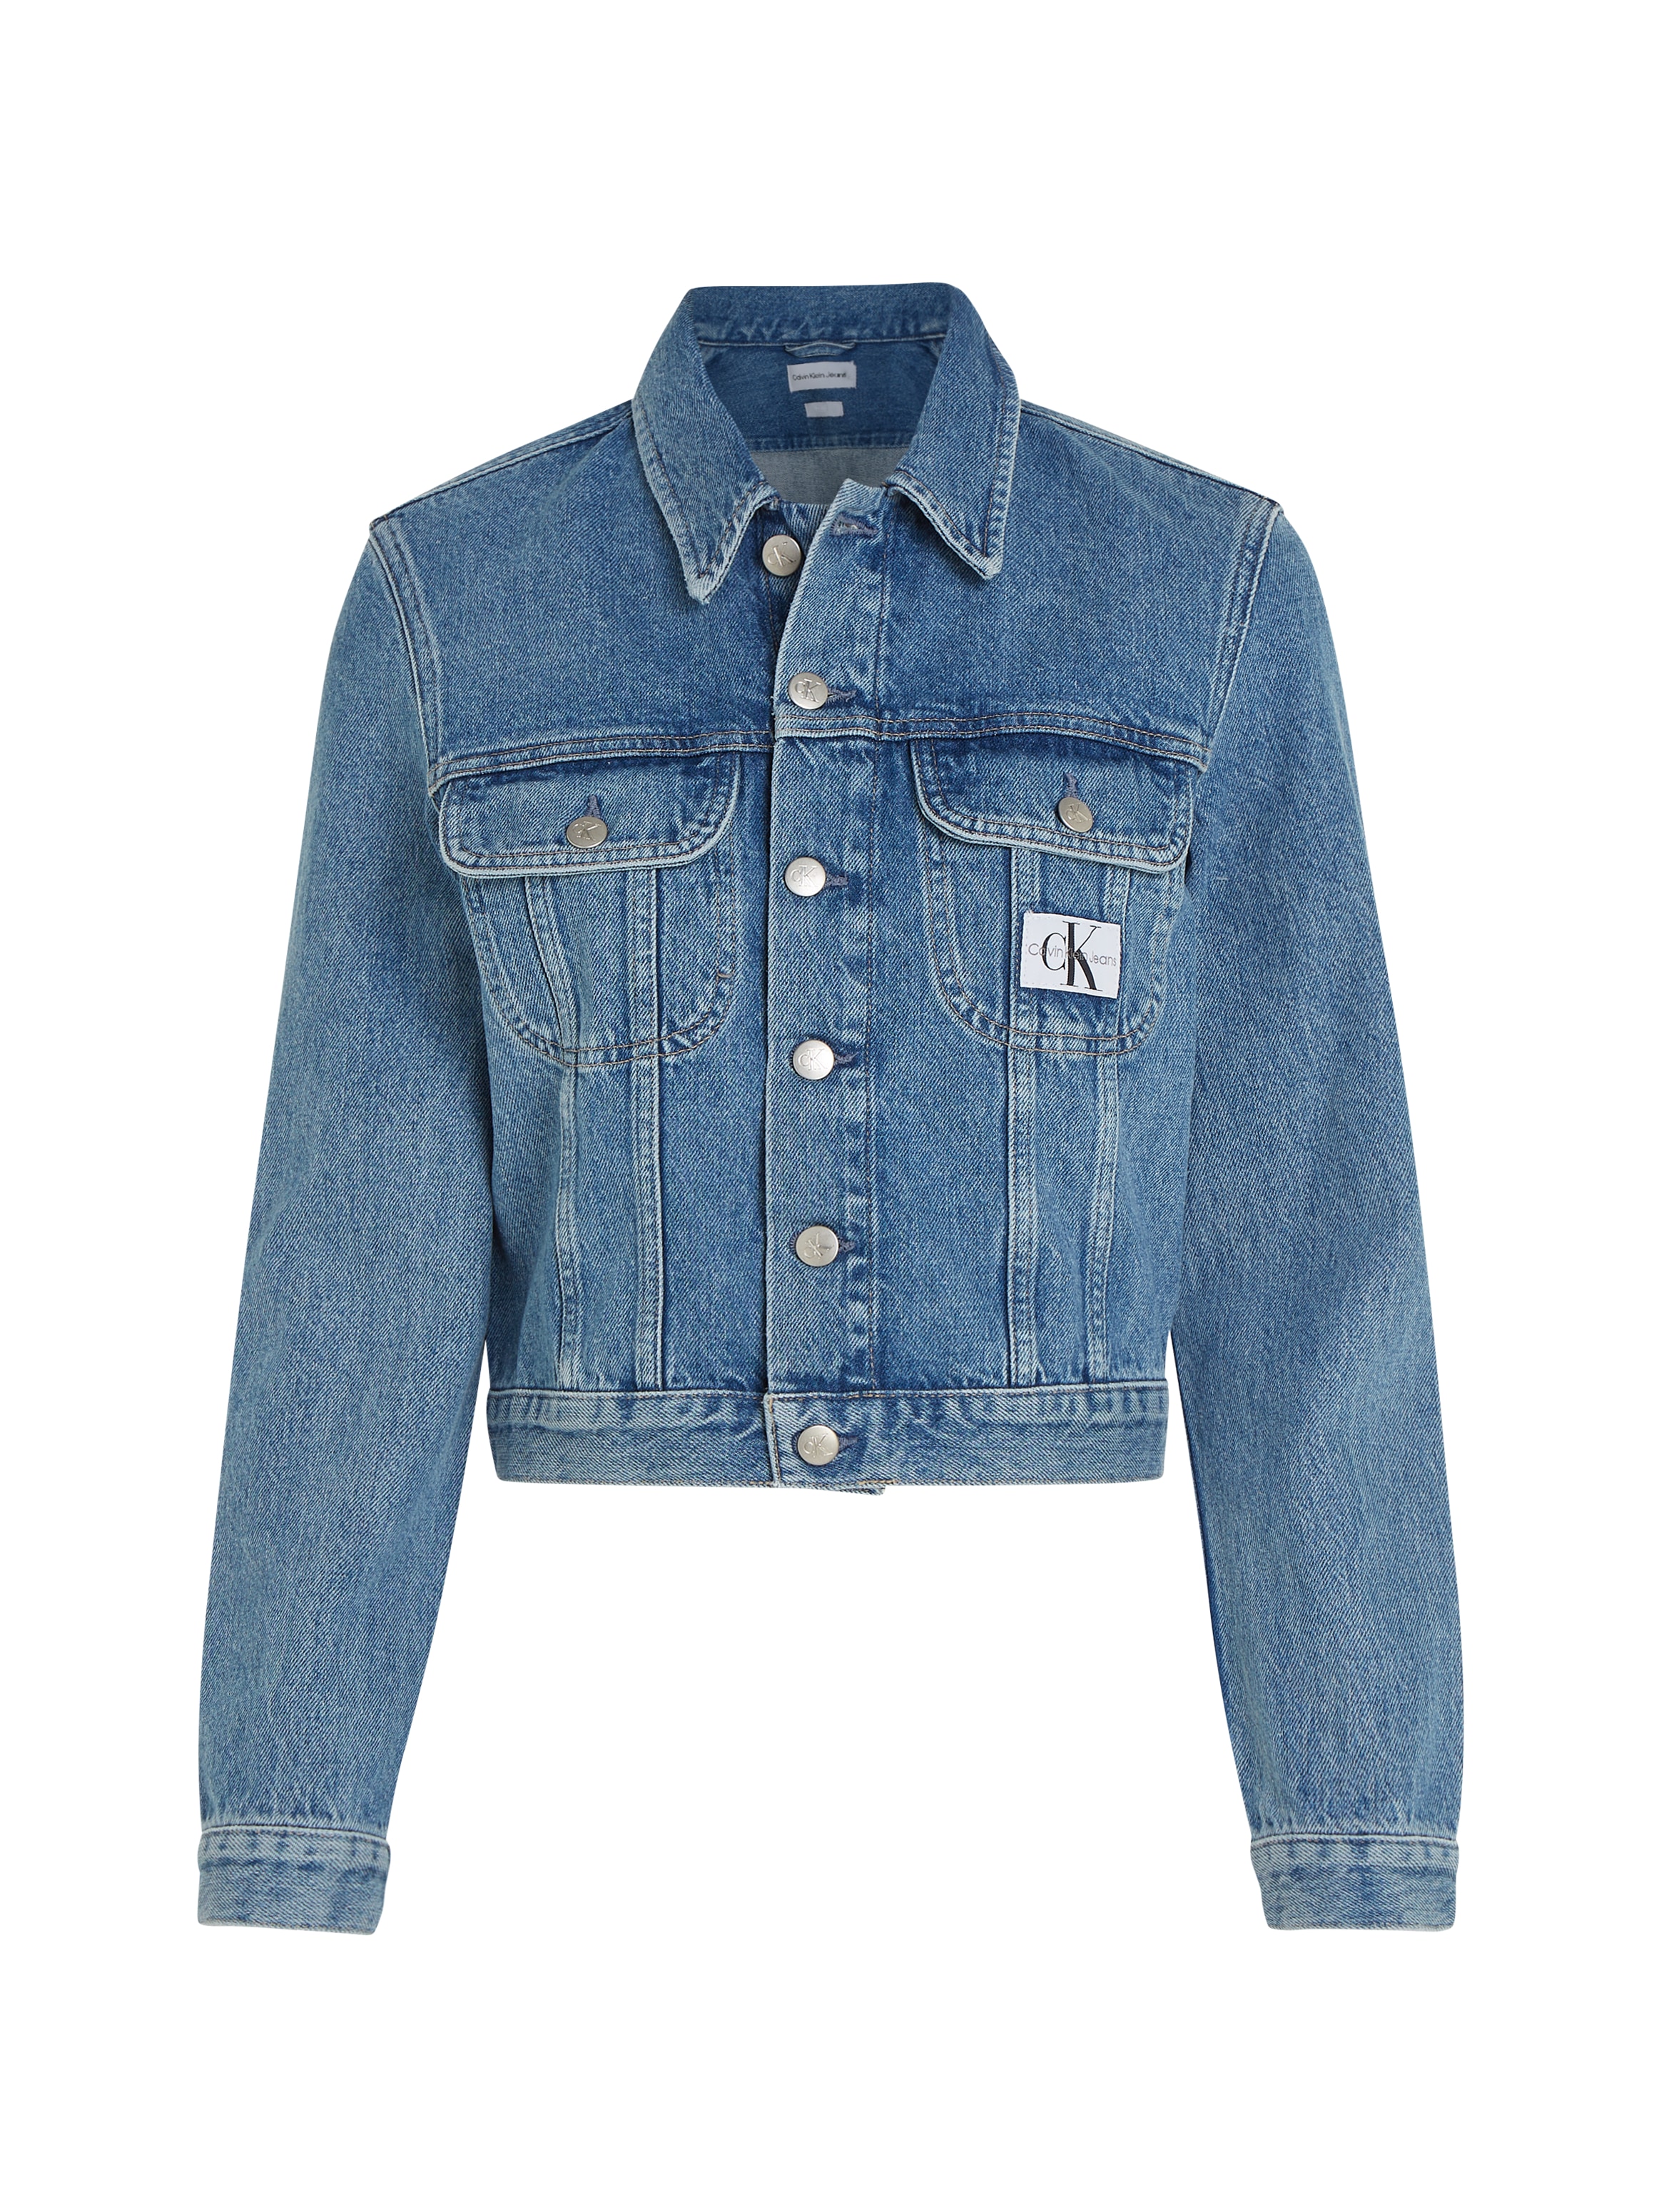 Jeansjacke Jeans »CROPPED OTTO bei Calvin Klein DENIM 90S JACKET« bestellen